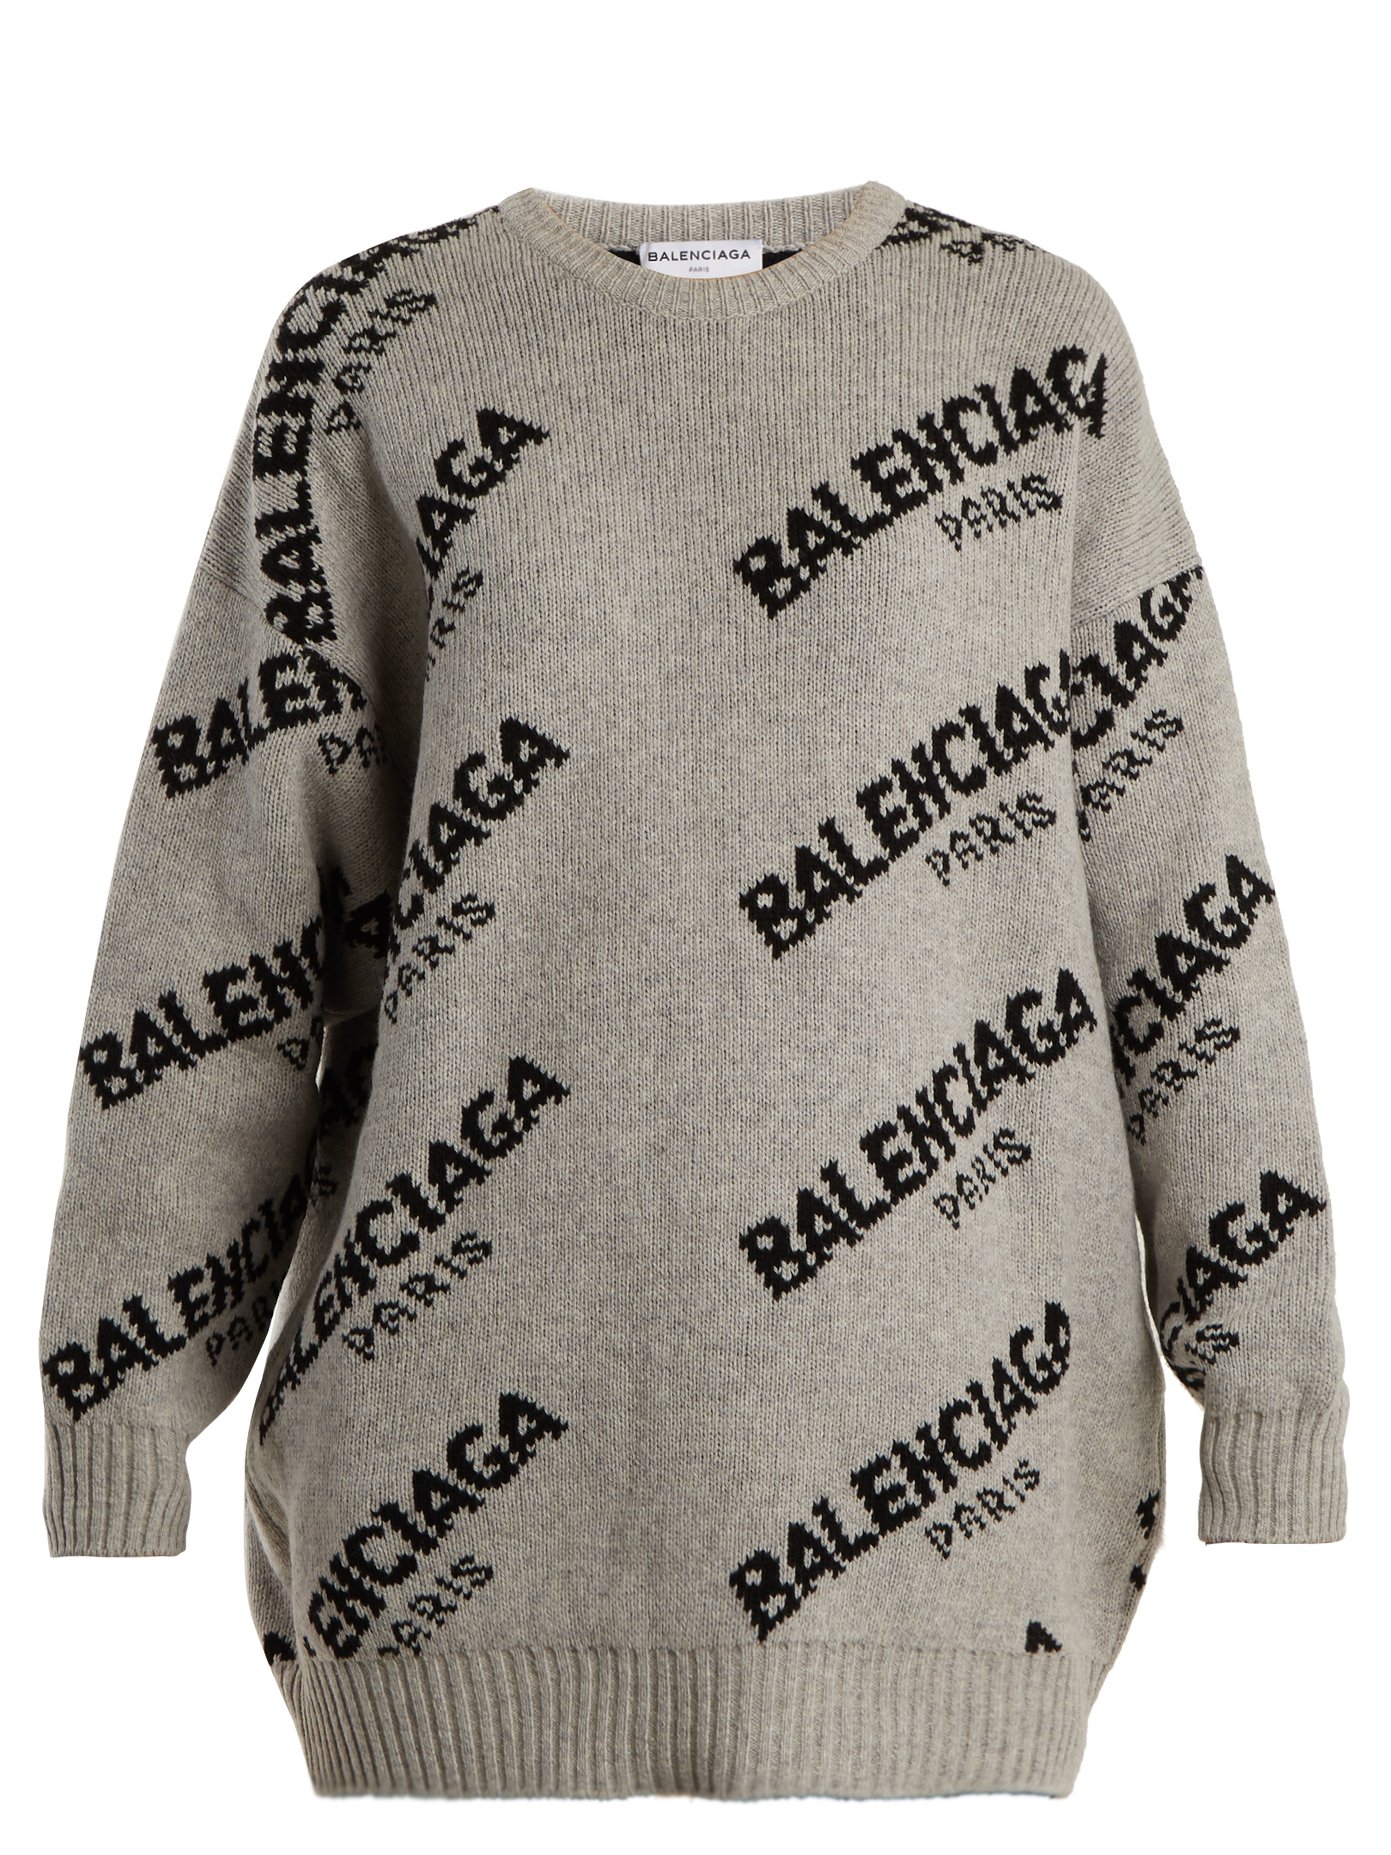 balenciaga grey logo sweater